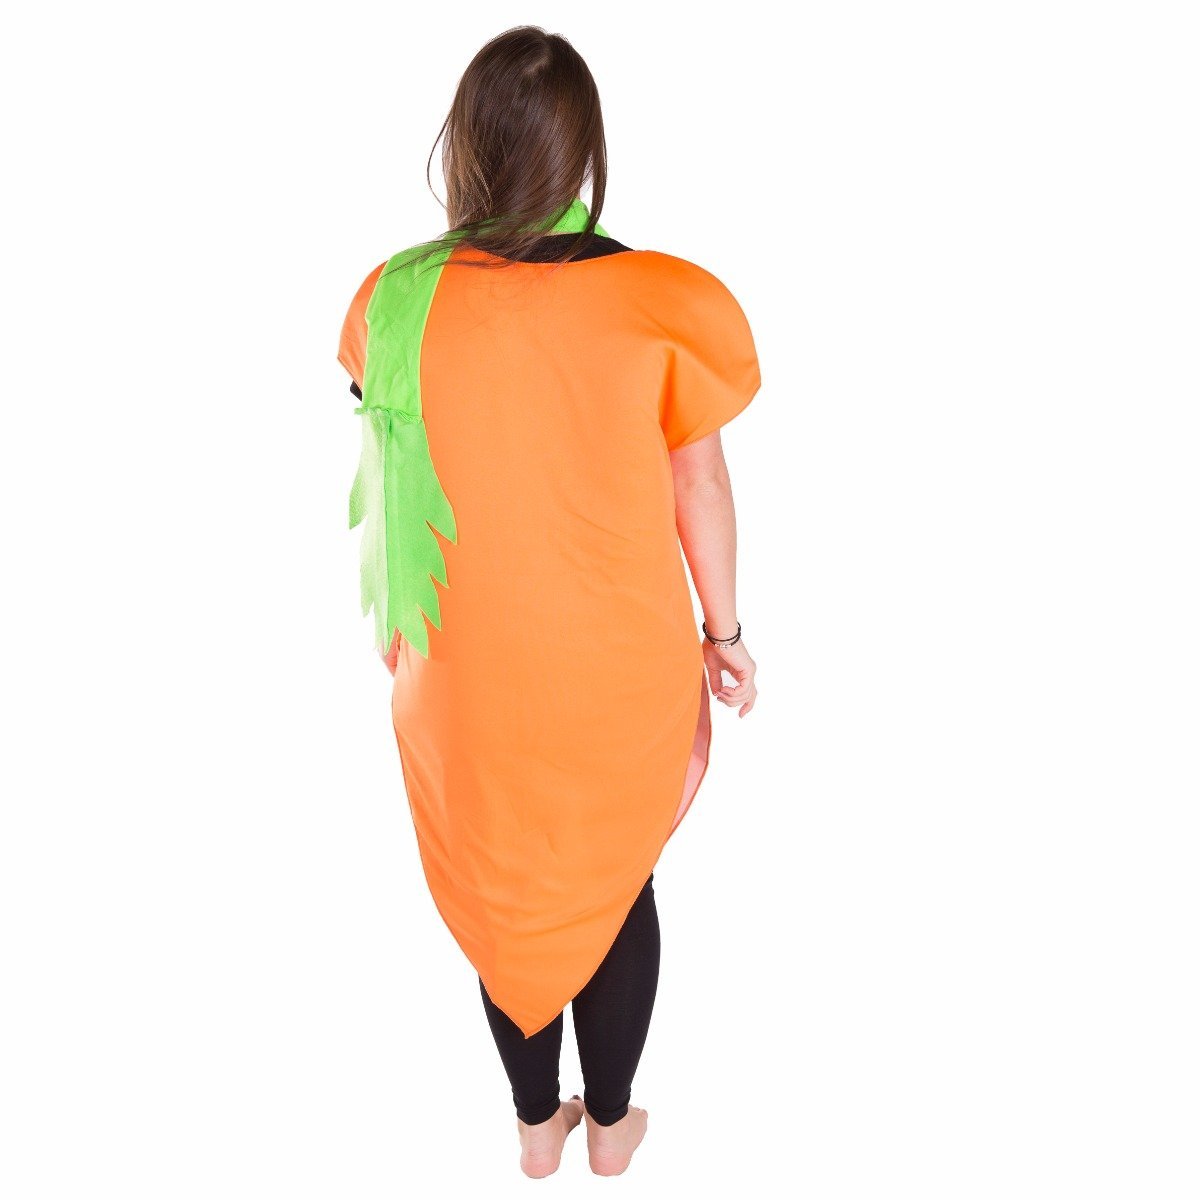 Bodysocks - Carrot Costume